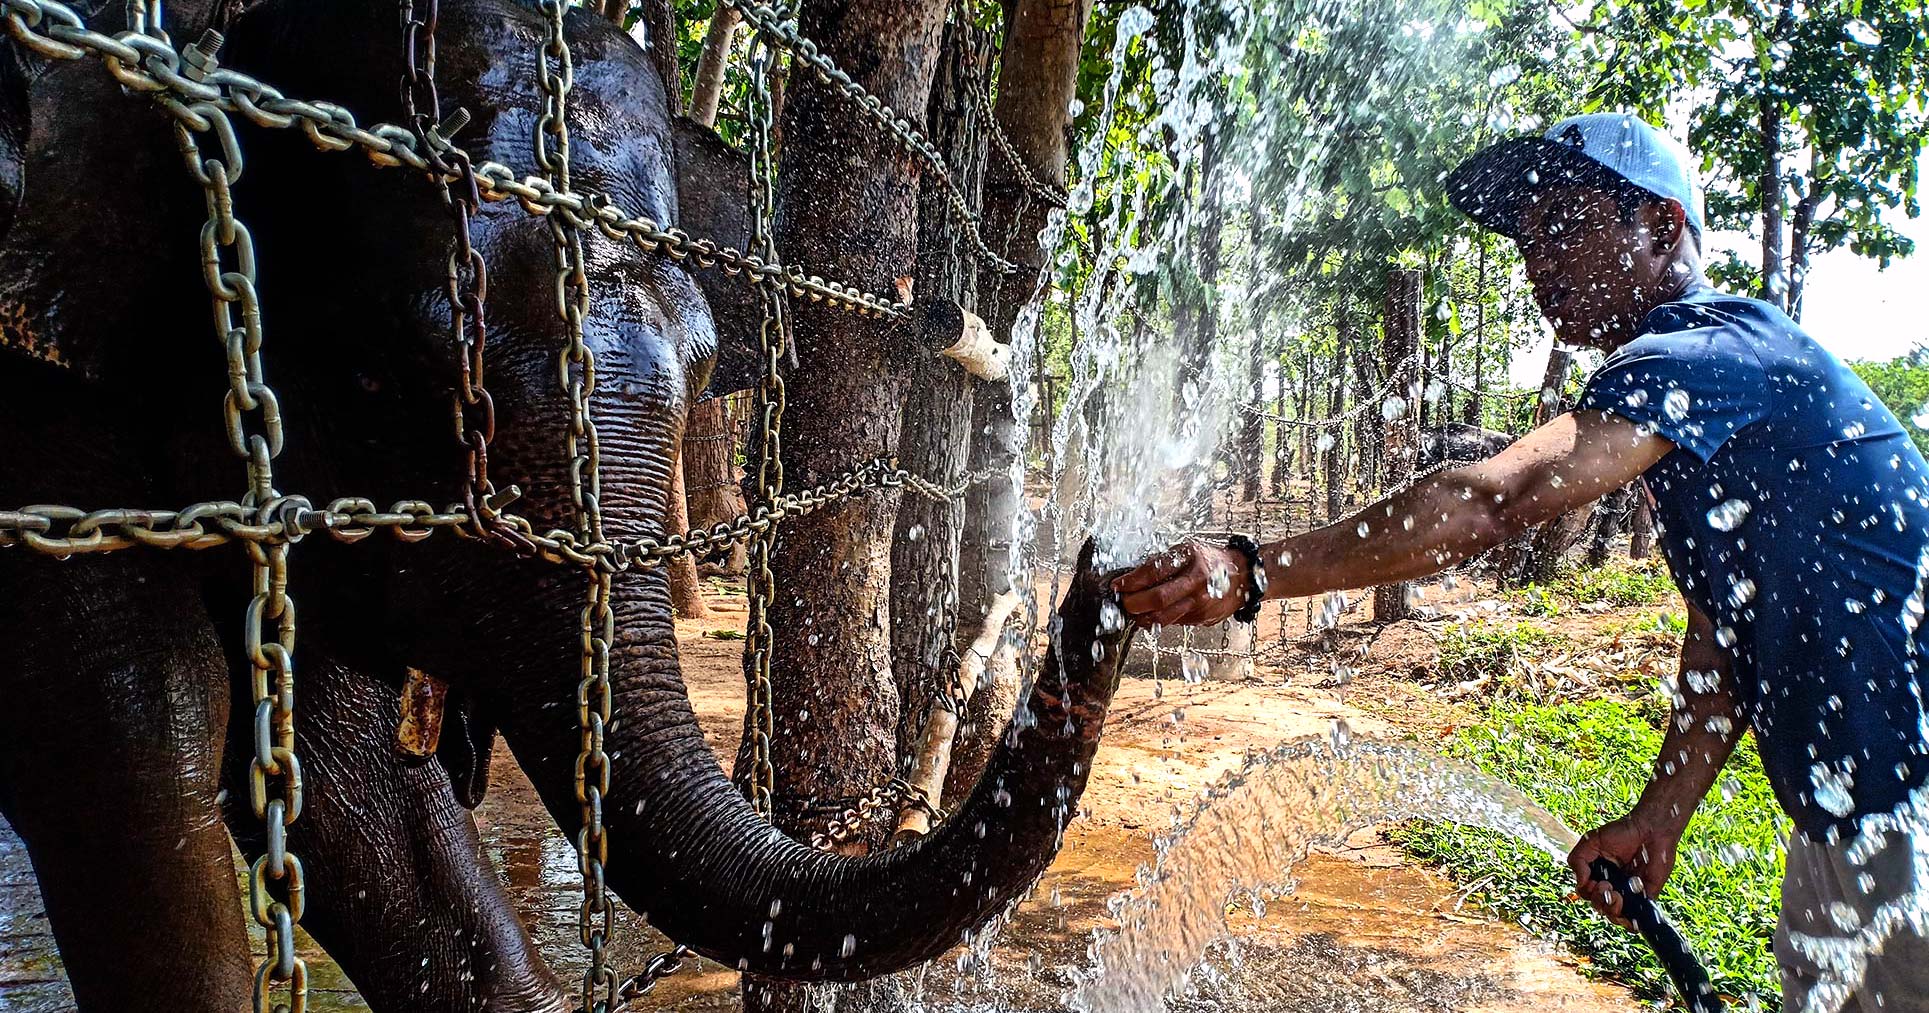 [Oppo F7] Câu chuyện về những người bảo tồn voi Tây Nguyên - Ảnh chụp bởi Nguyễn Thanh Dương